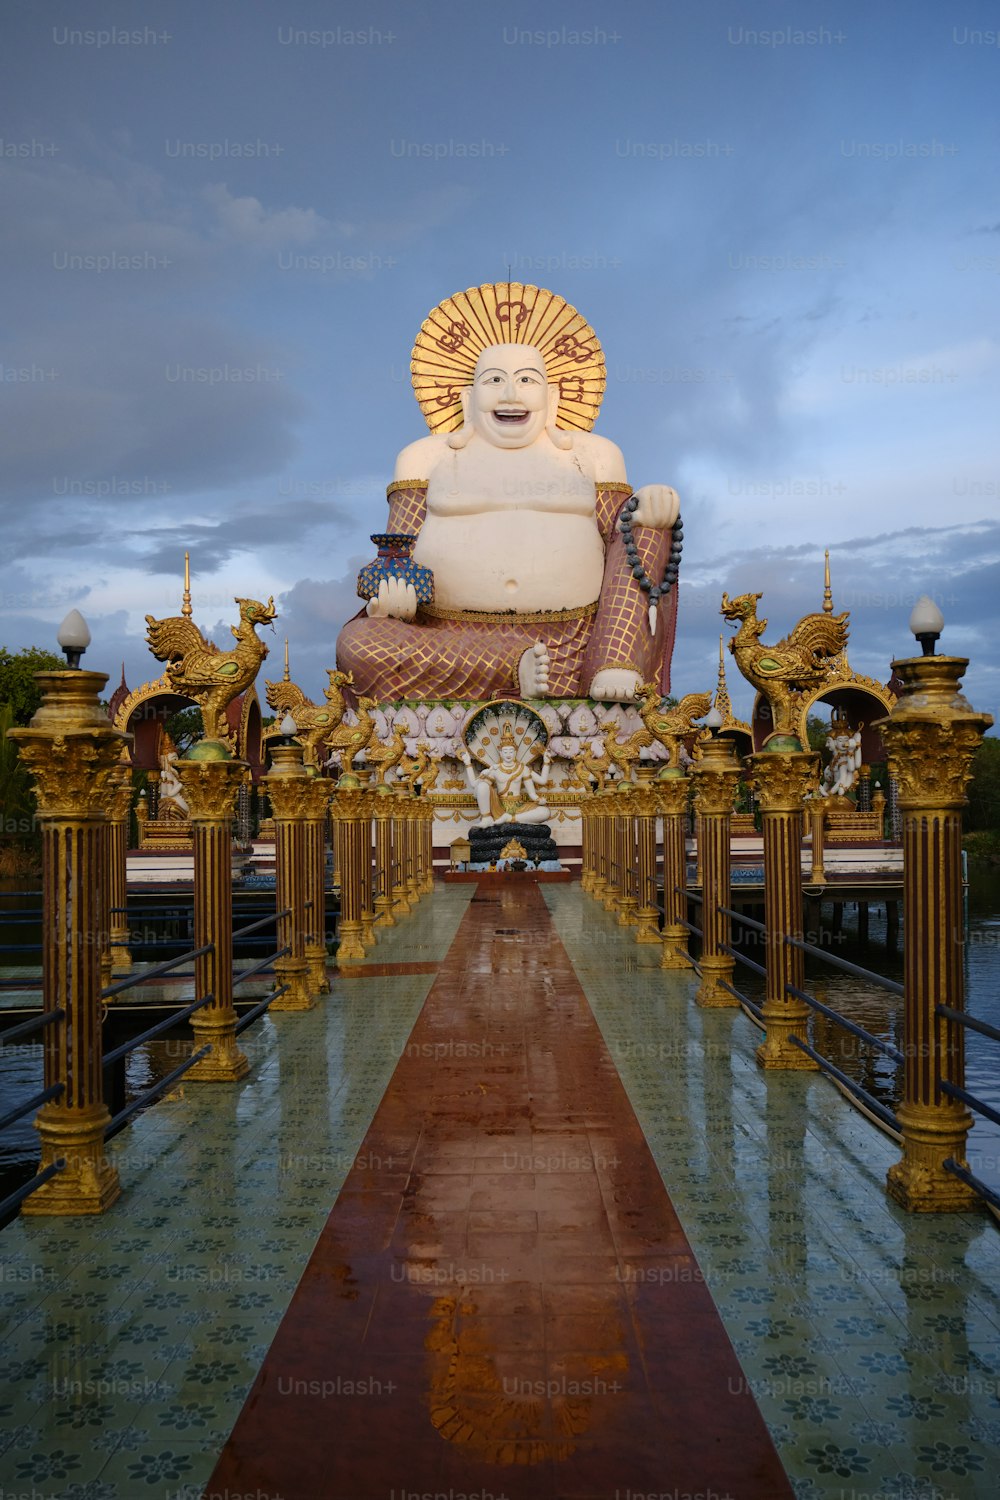 Uma grande estátua de Buda sentada no meio de uma passarela